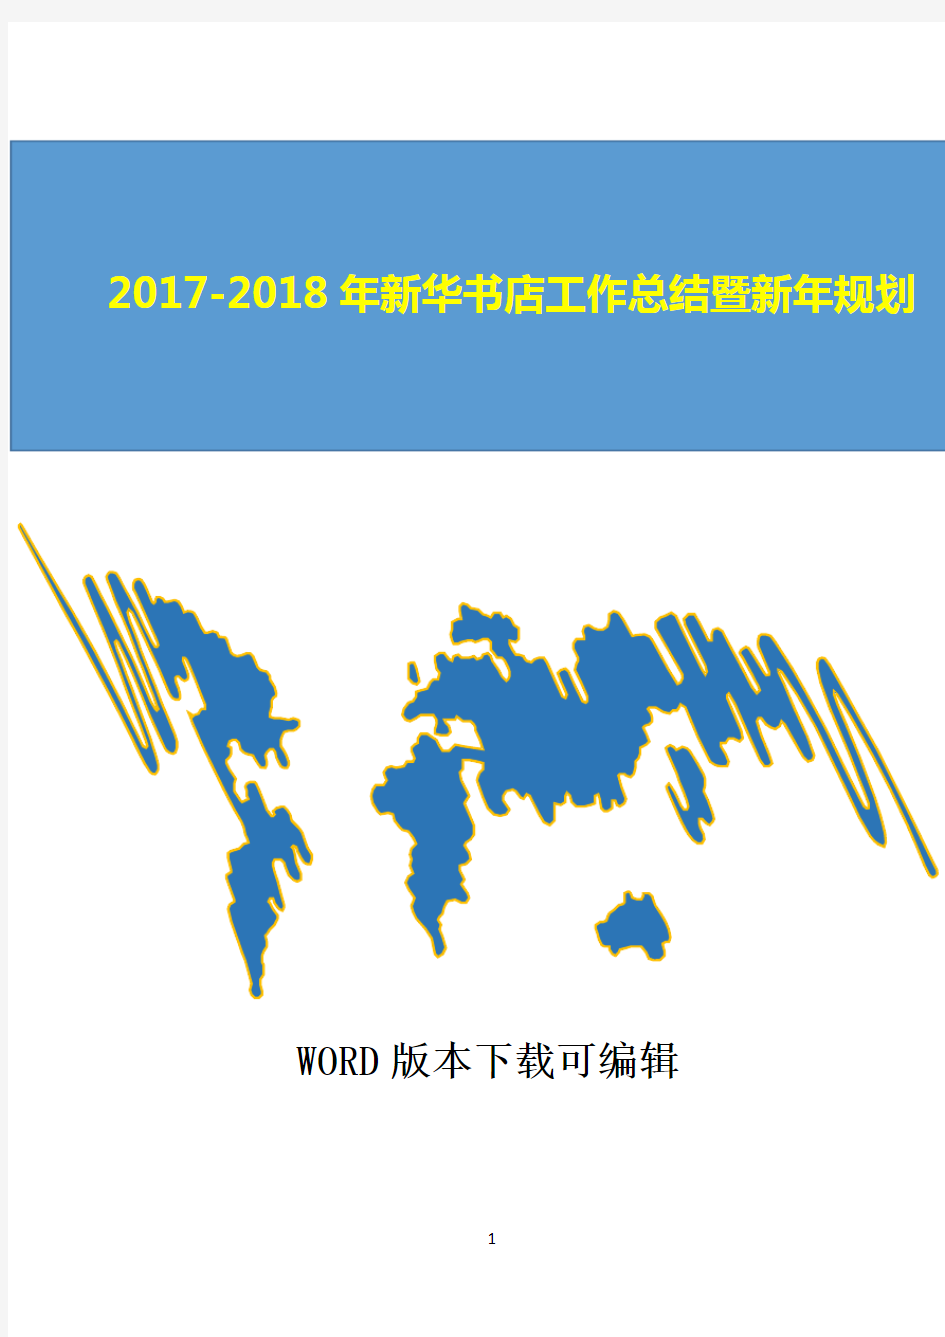 2017-2018年新华书店工作总结暨新年规划